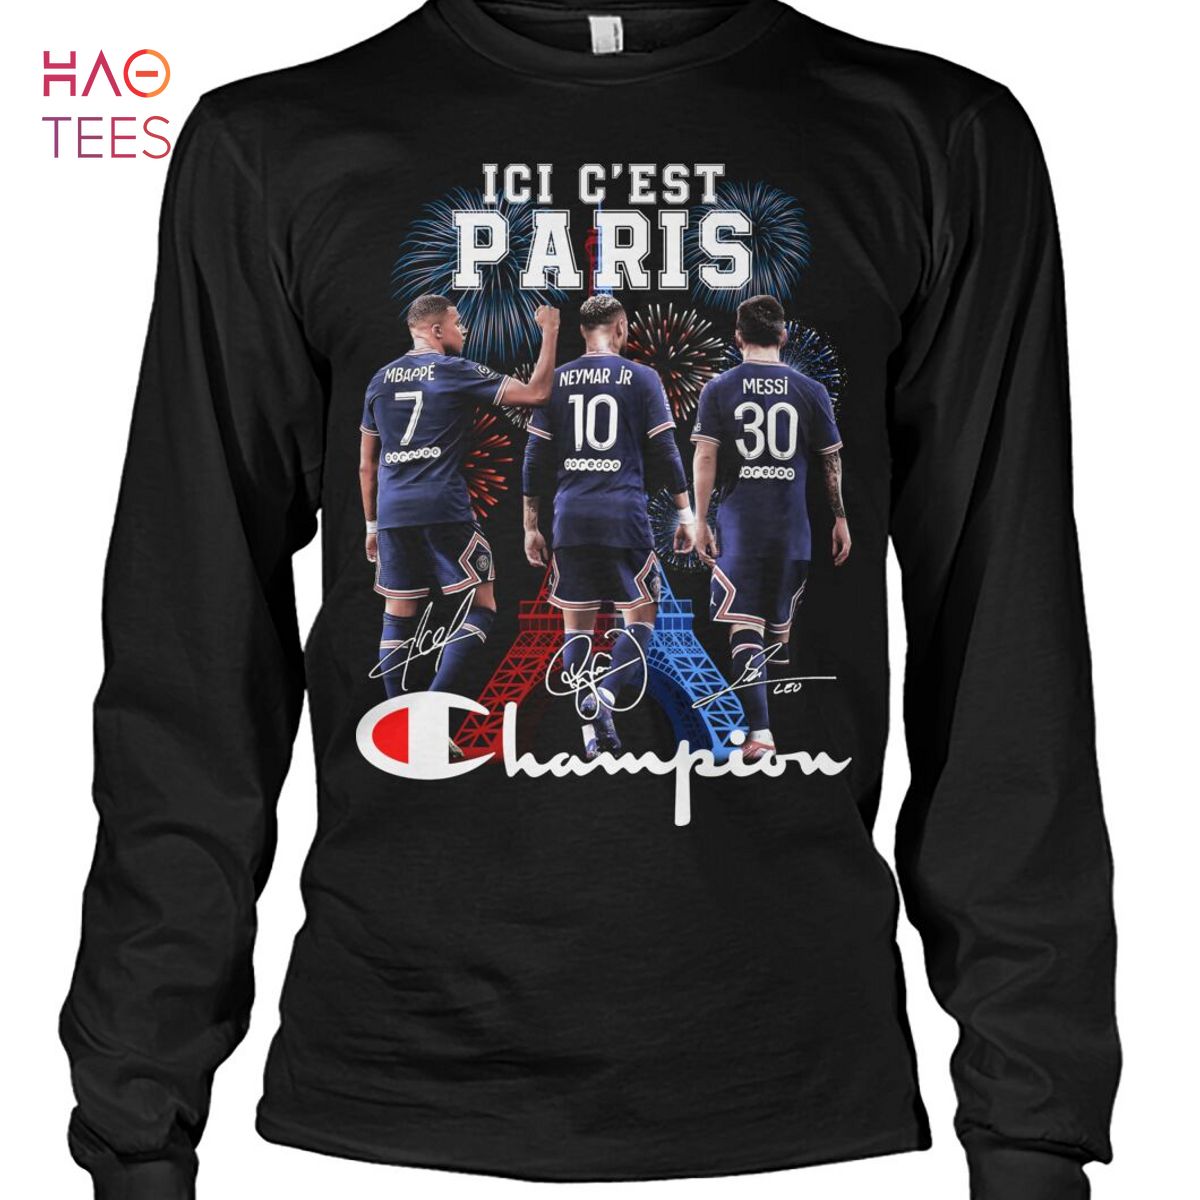 ICI C'EST Paris Champion Shirt Limited Edition